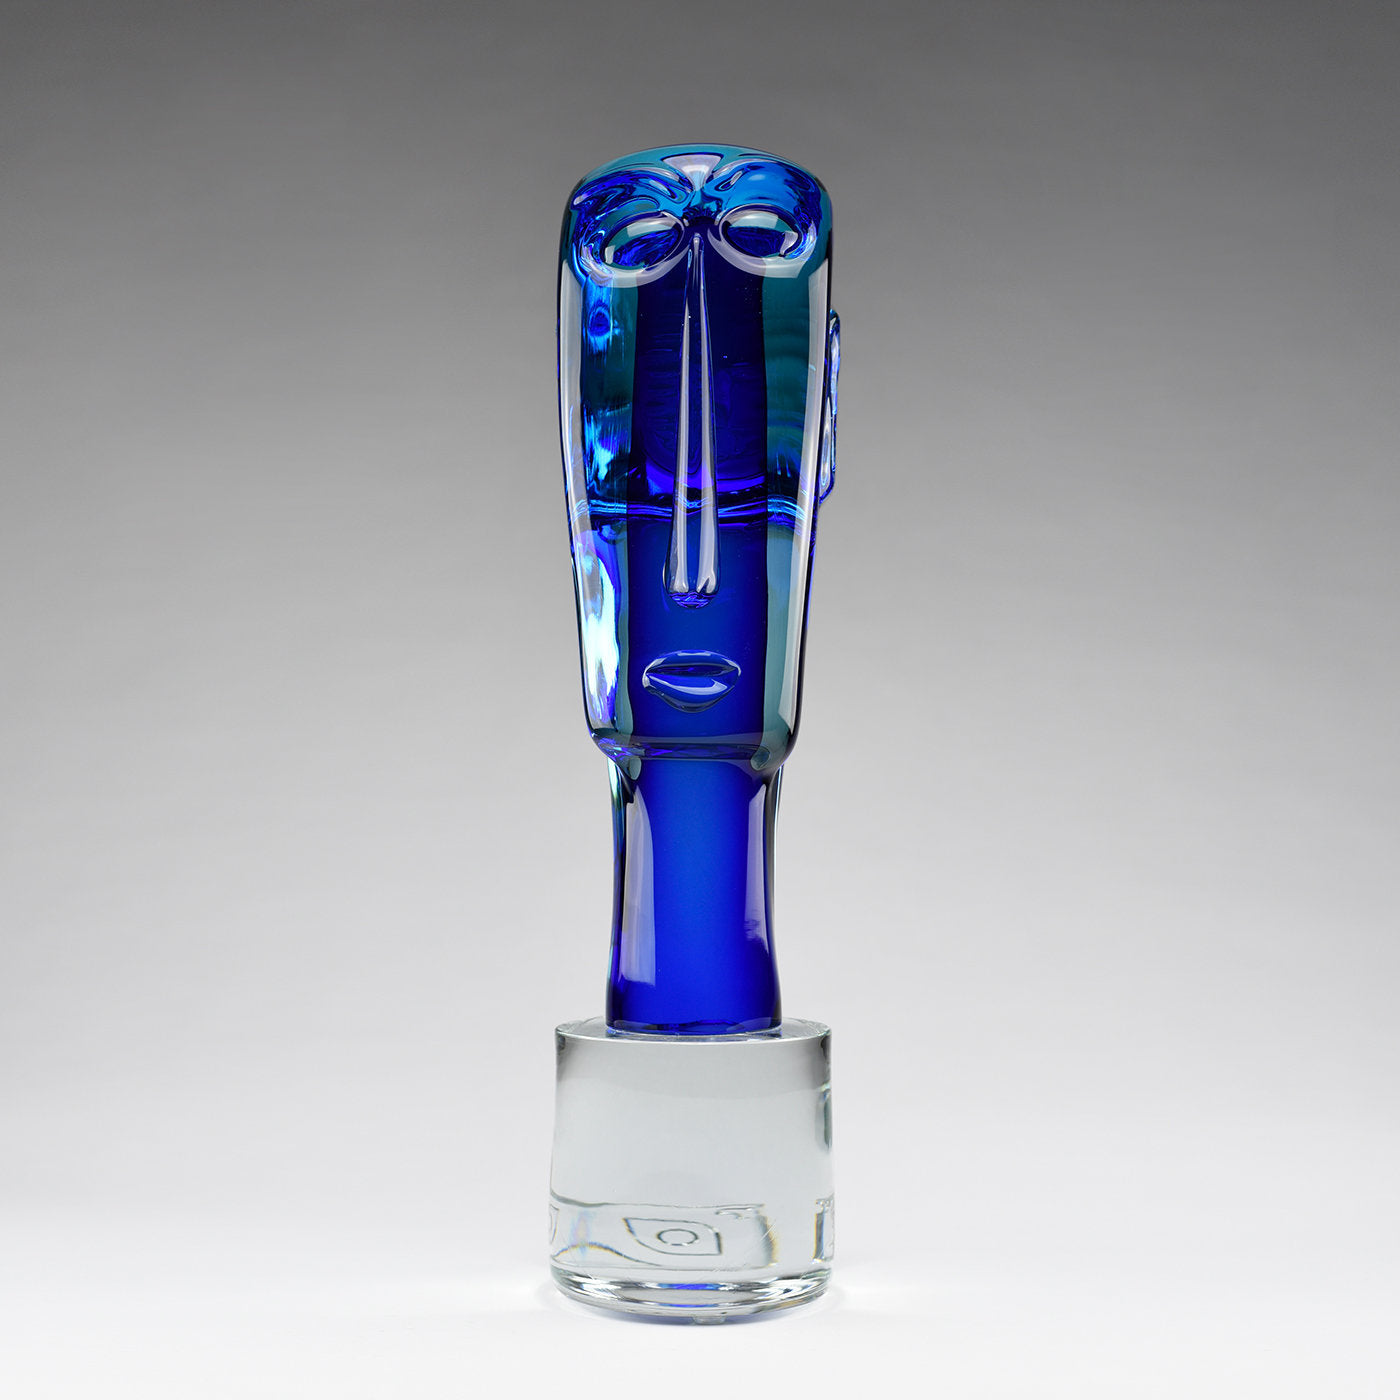 Volto Squadrato Blue Glass Sculpture - Alternative view 1